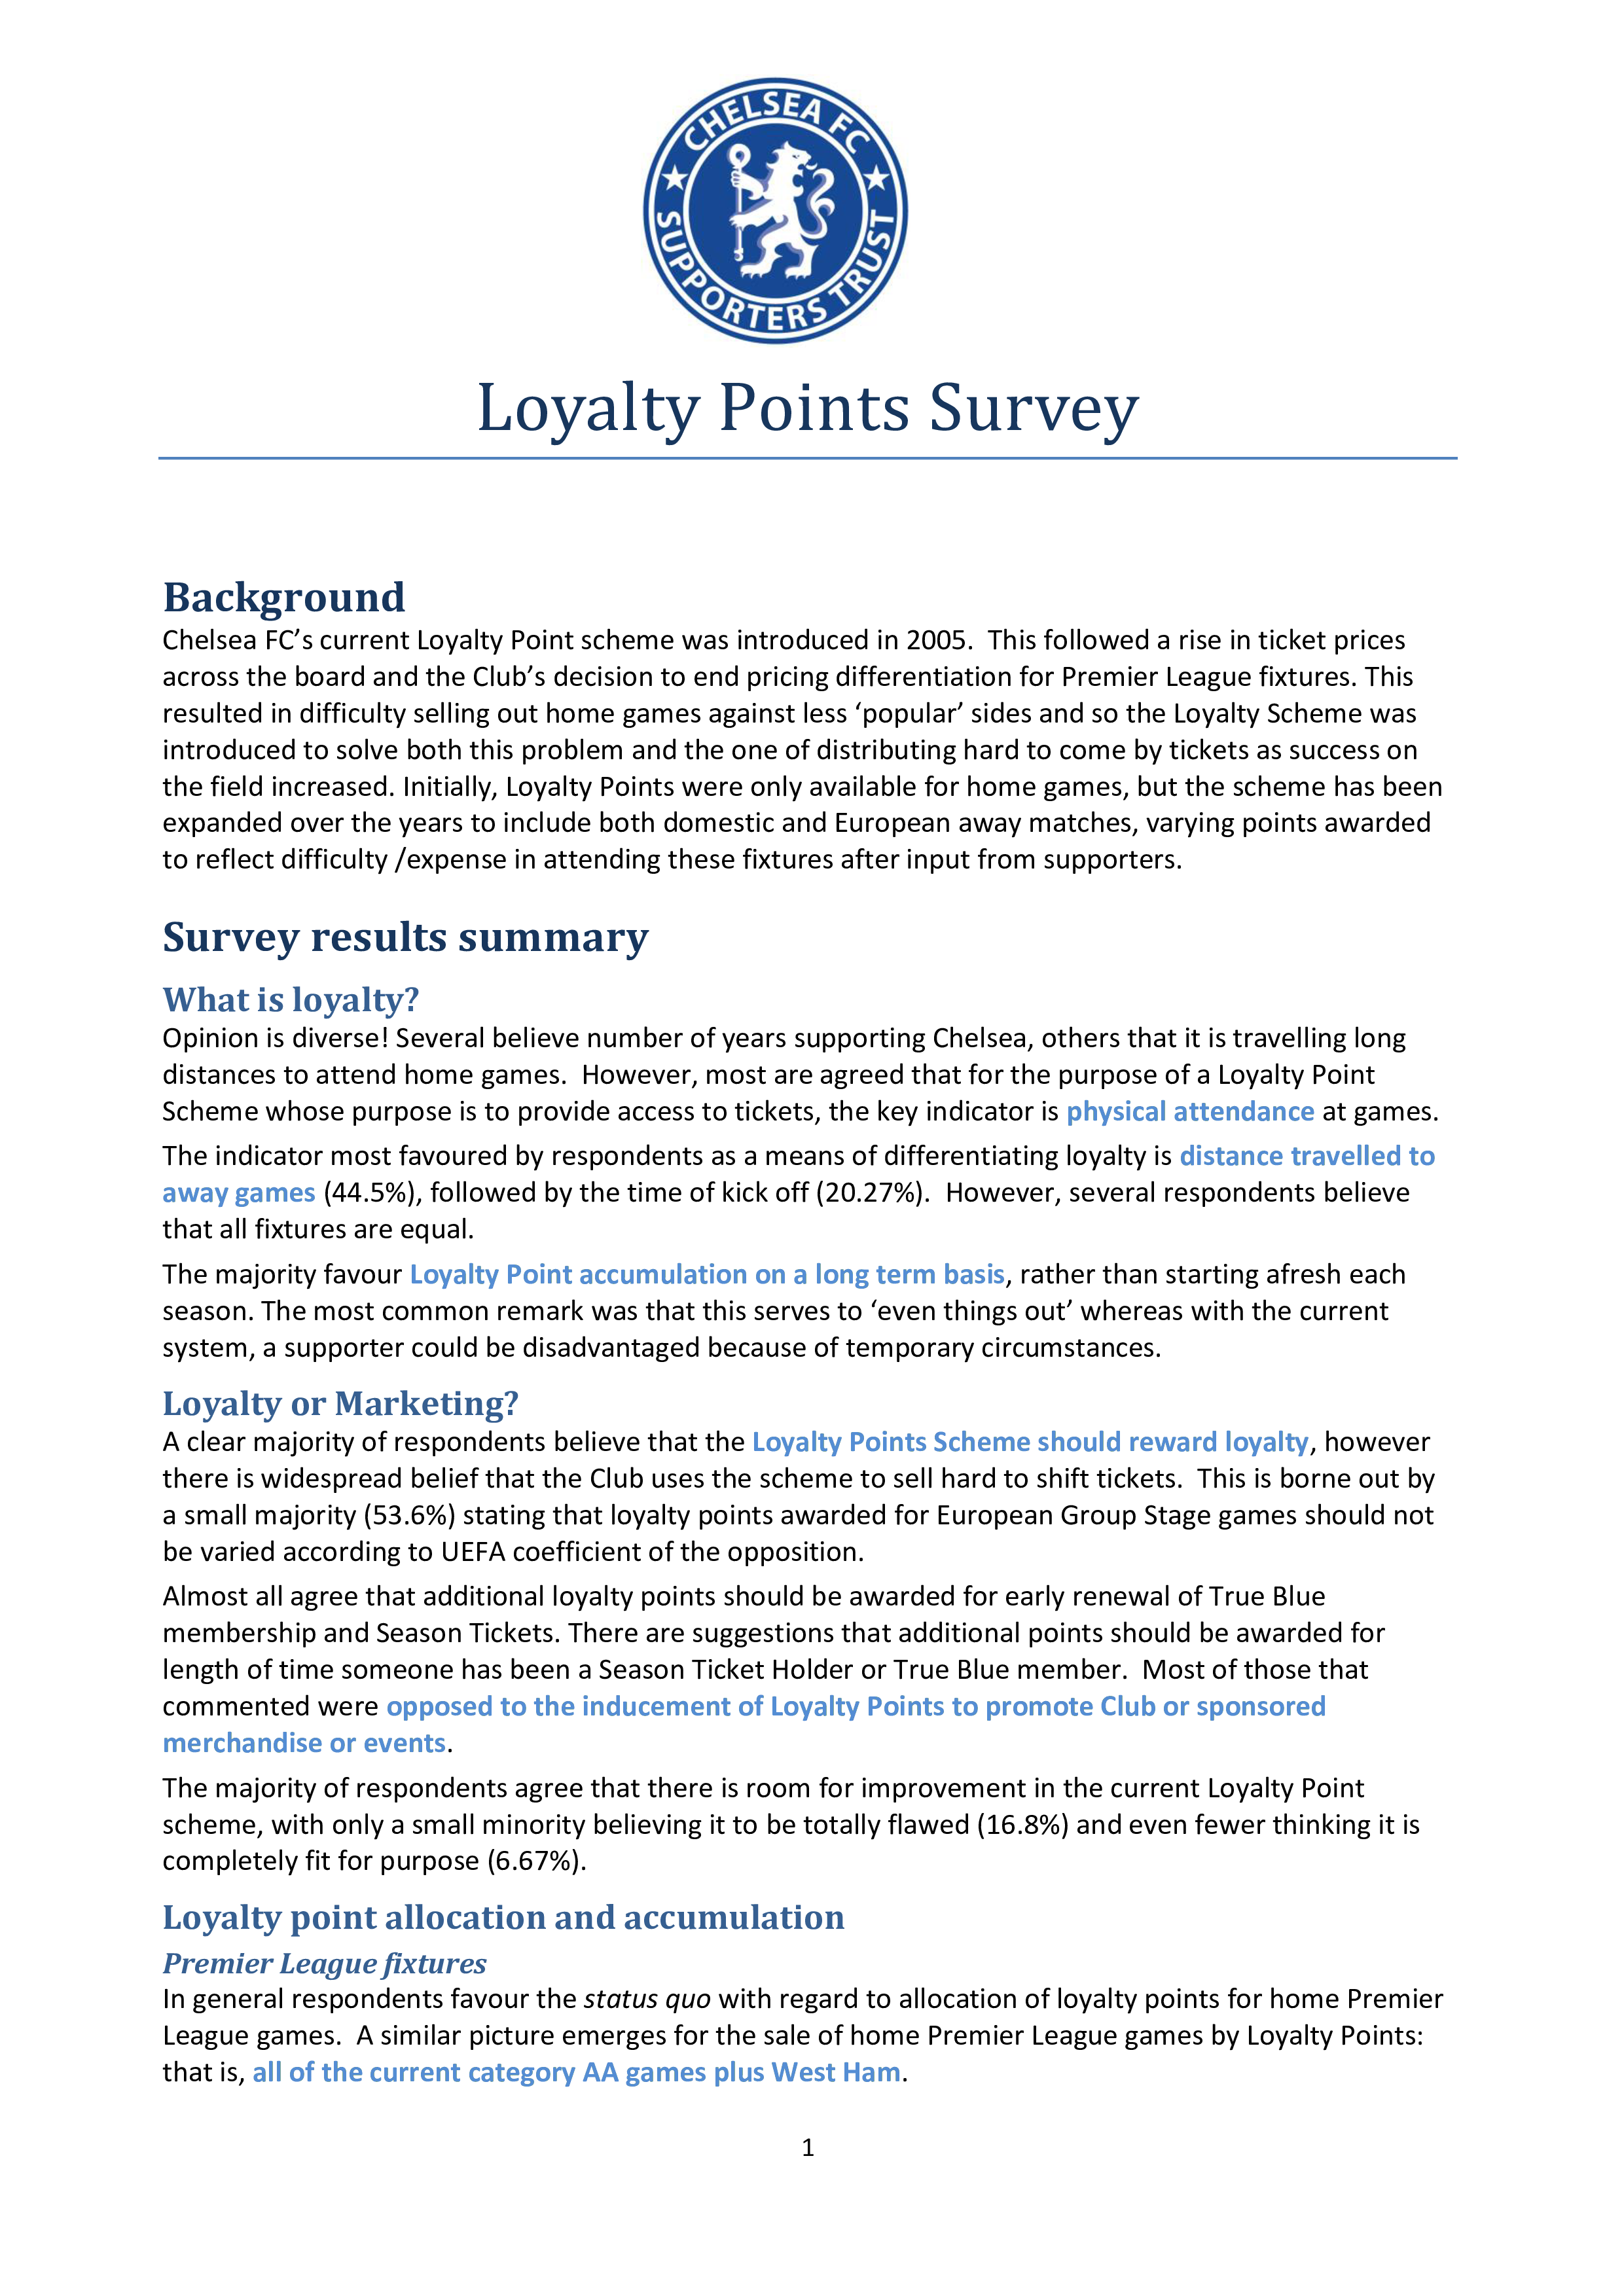 loyalty points survey plantilla imagen principal